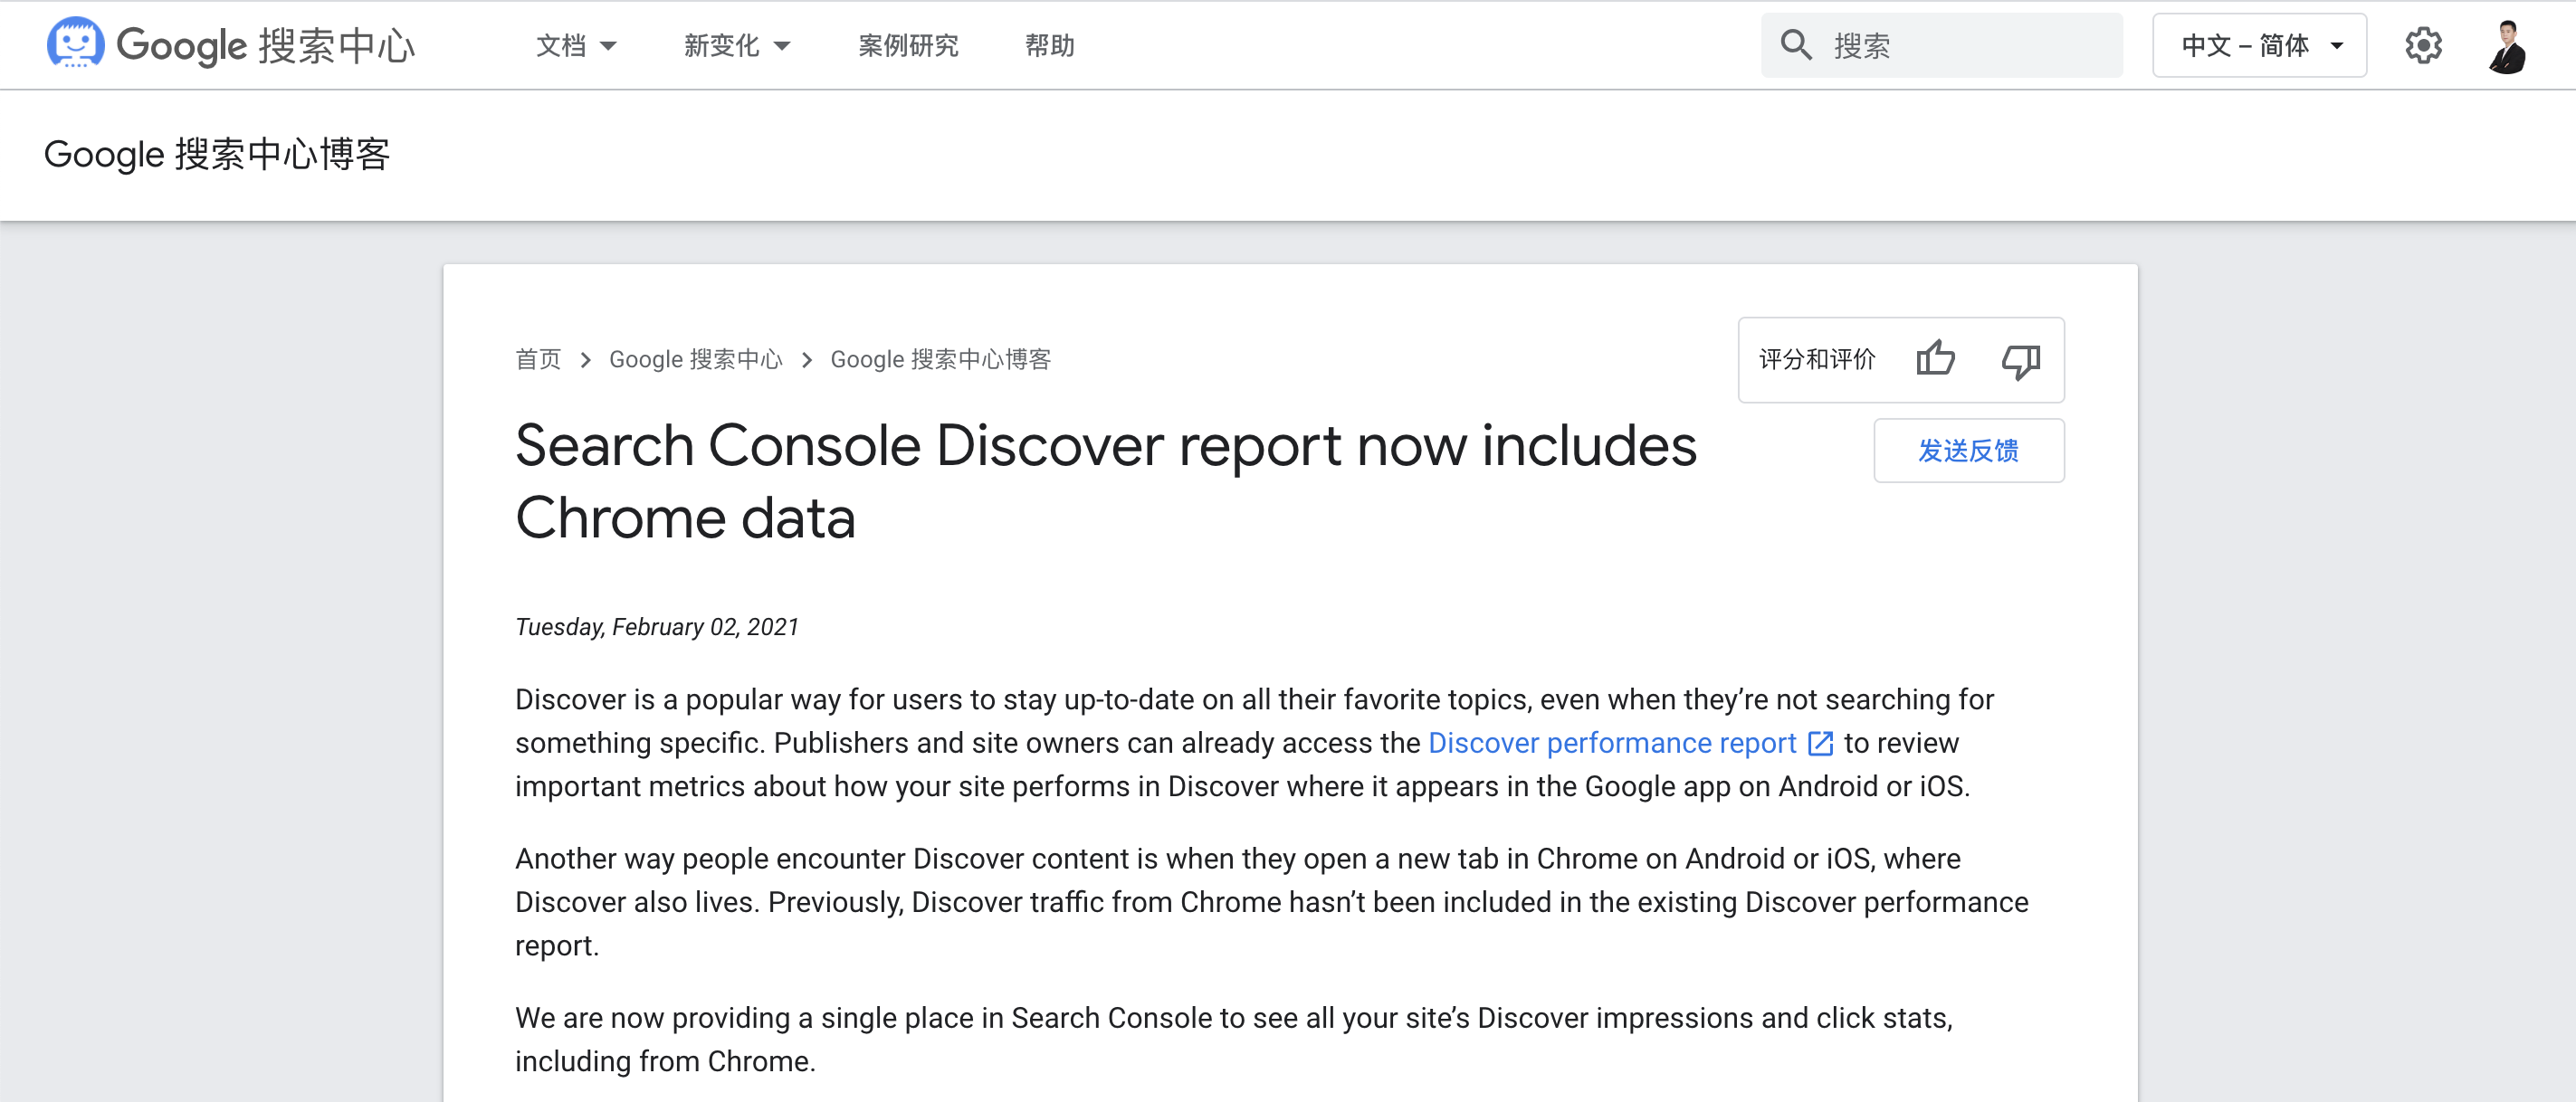 来自Chrome的流量将显示在Google探索效果报告中